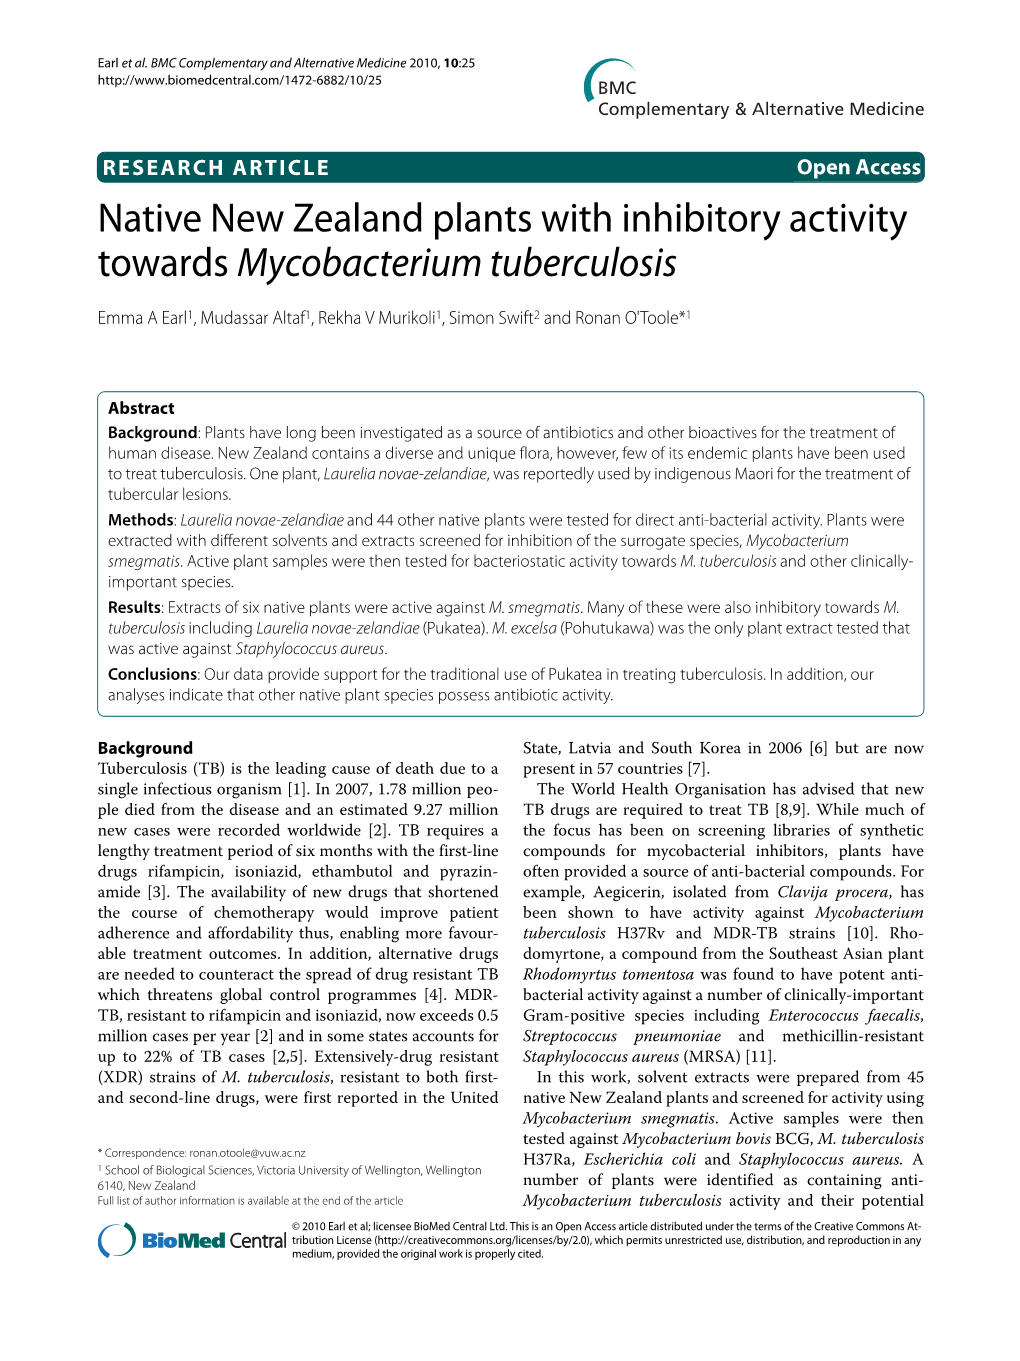 Native New Zealand Plants with Inhibitory Activity Towards